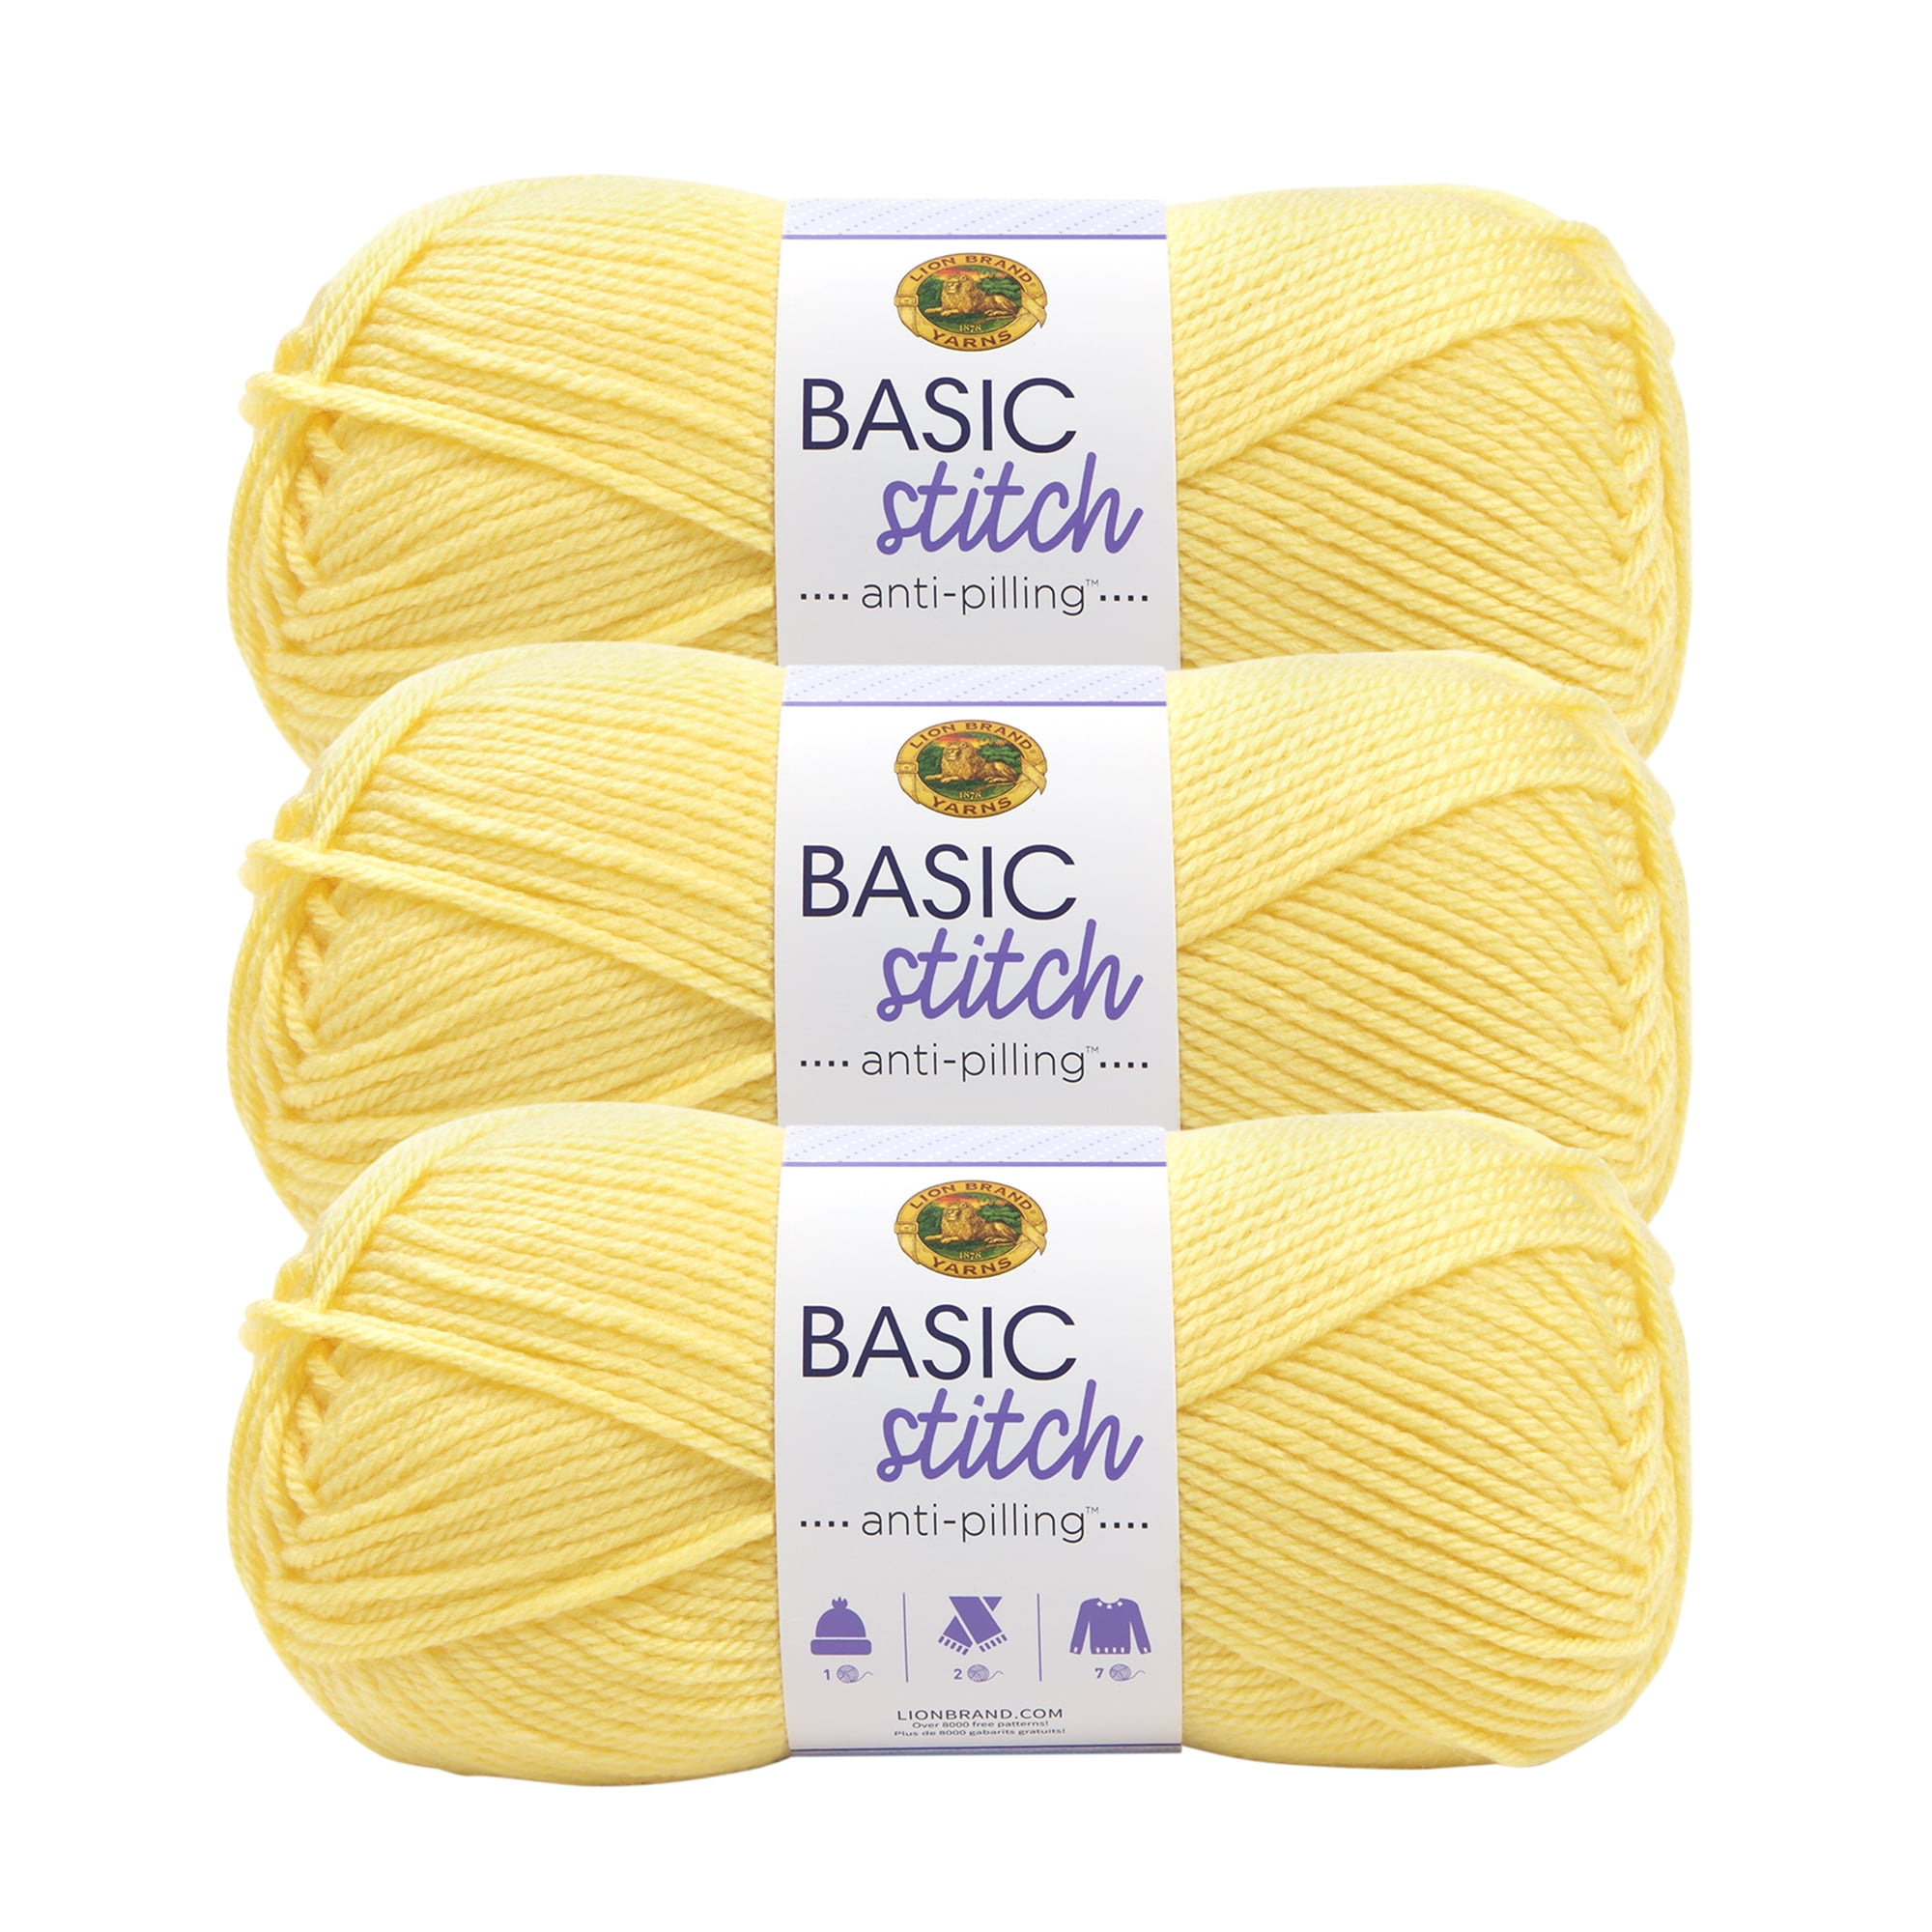 Lion Brand Yarn Basic Stitch Anti Pilling Volt Yellow Anti Pilling Medium  Acrylic, Polyester Yellow Yarn 3 Pack 